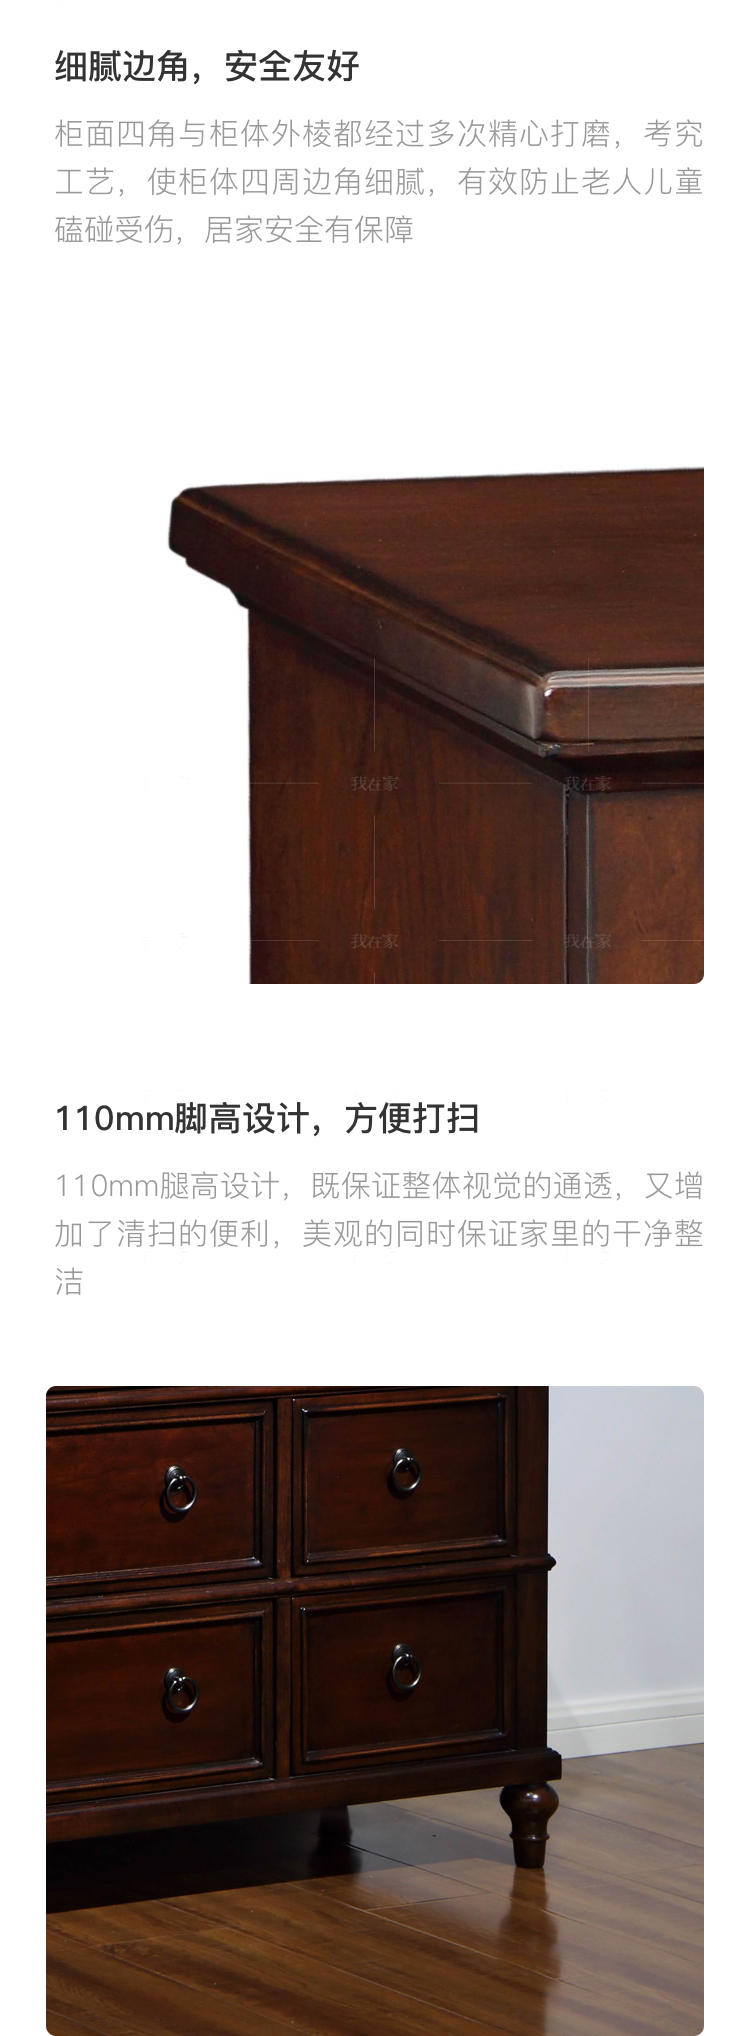 传统美式风格路易斯安娜九斗矮柜的家具详细介绍